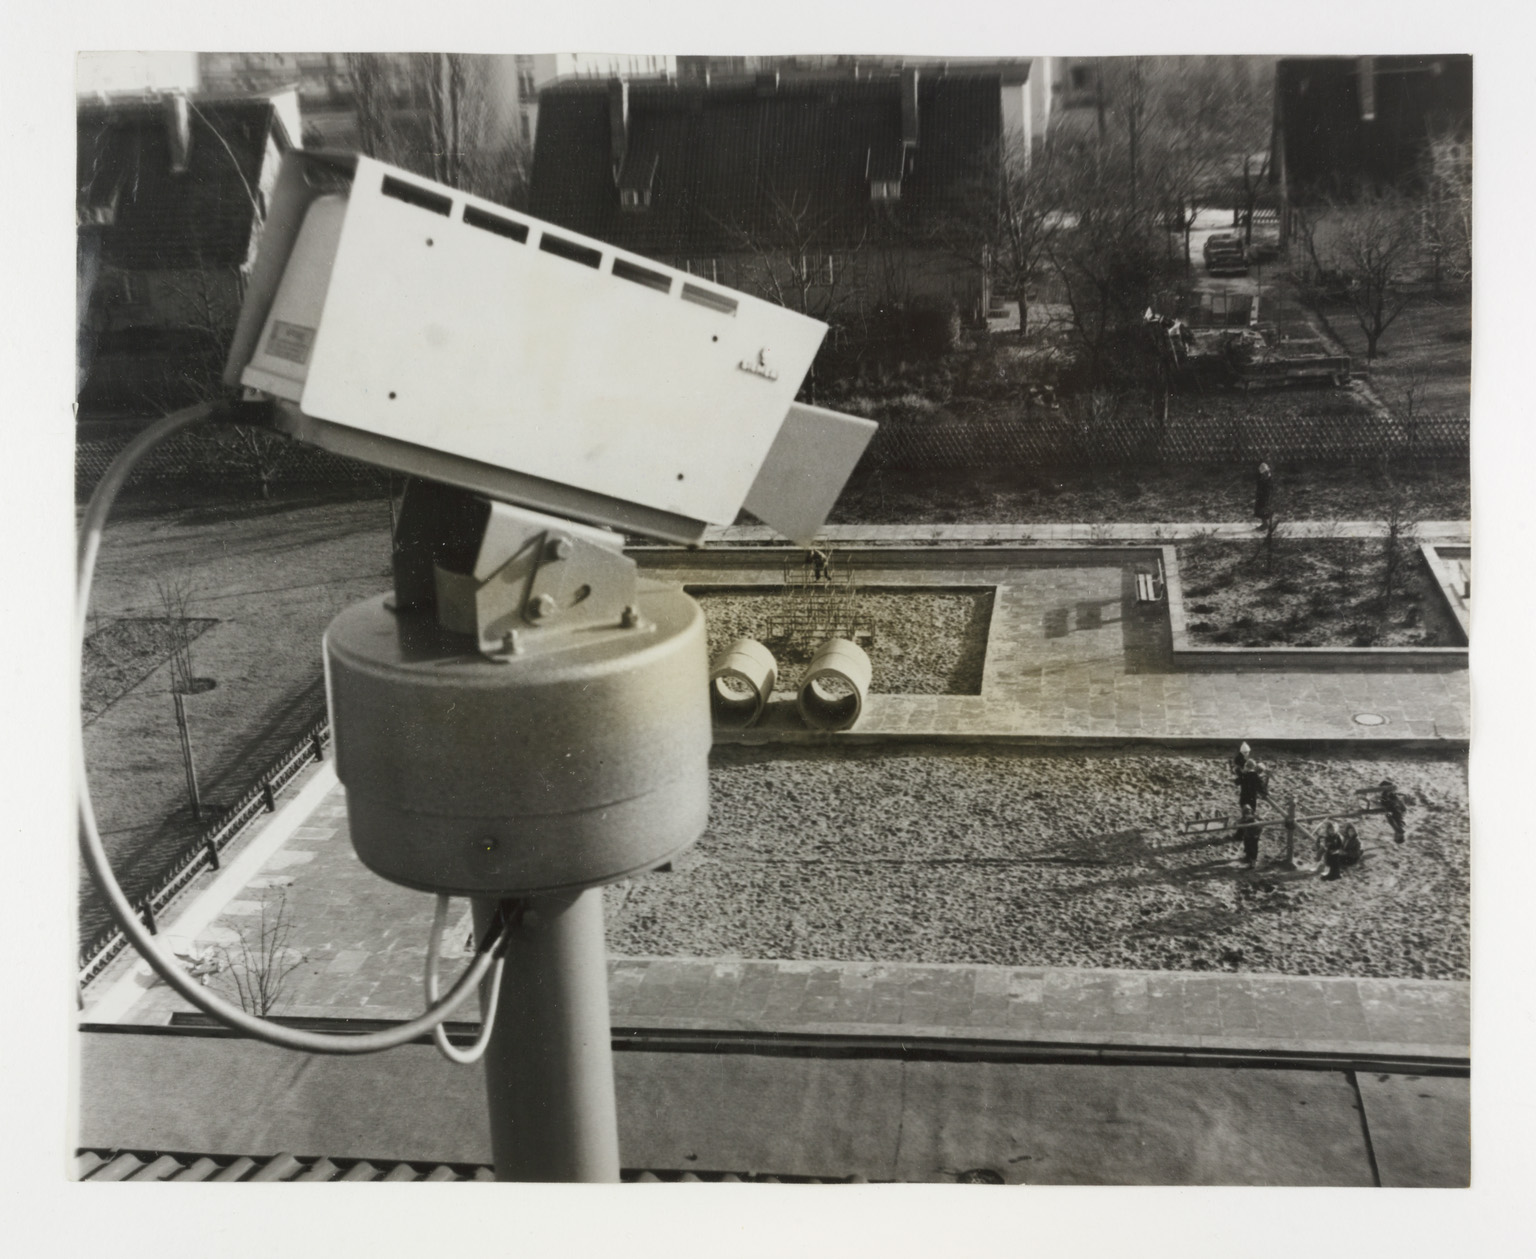 CCTV watches over children in a Berlin playground, 1964